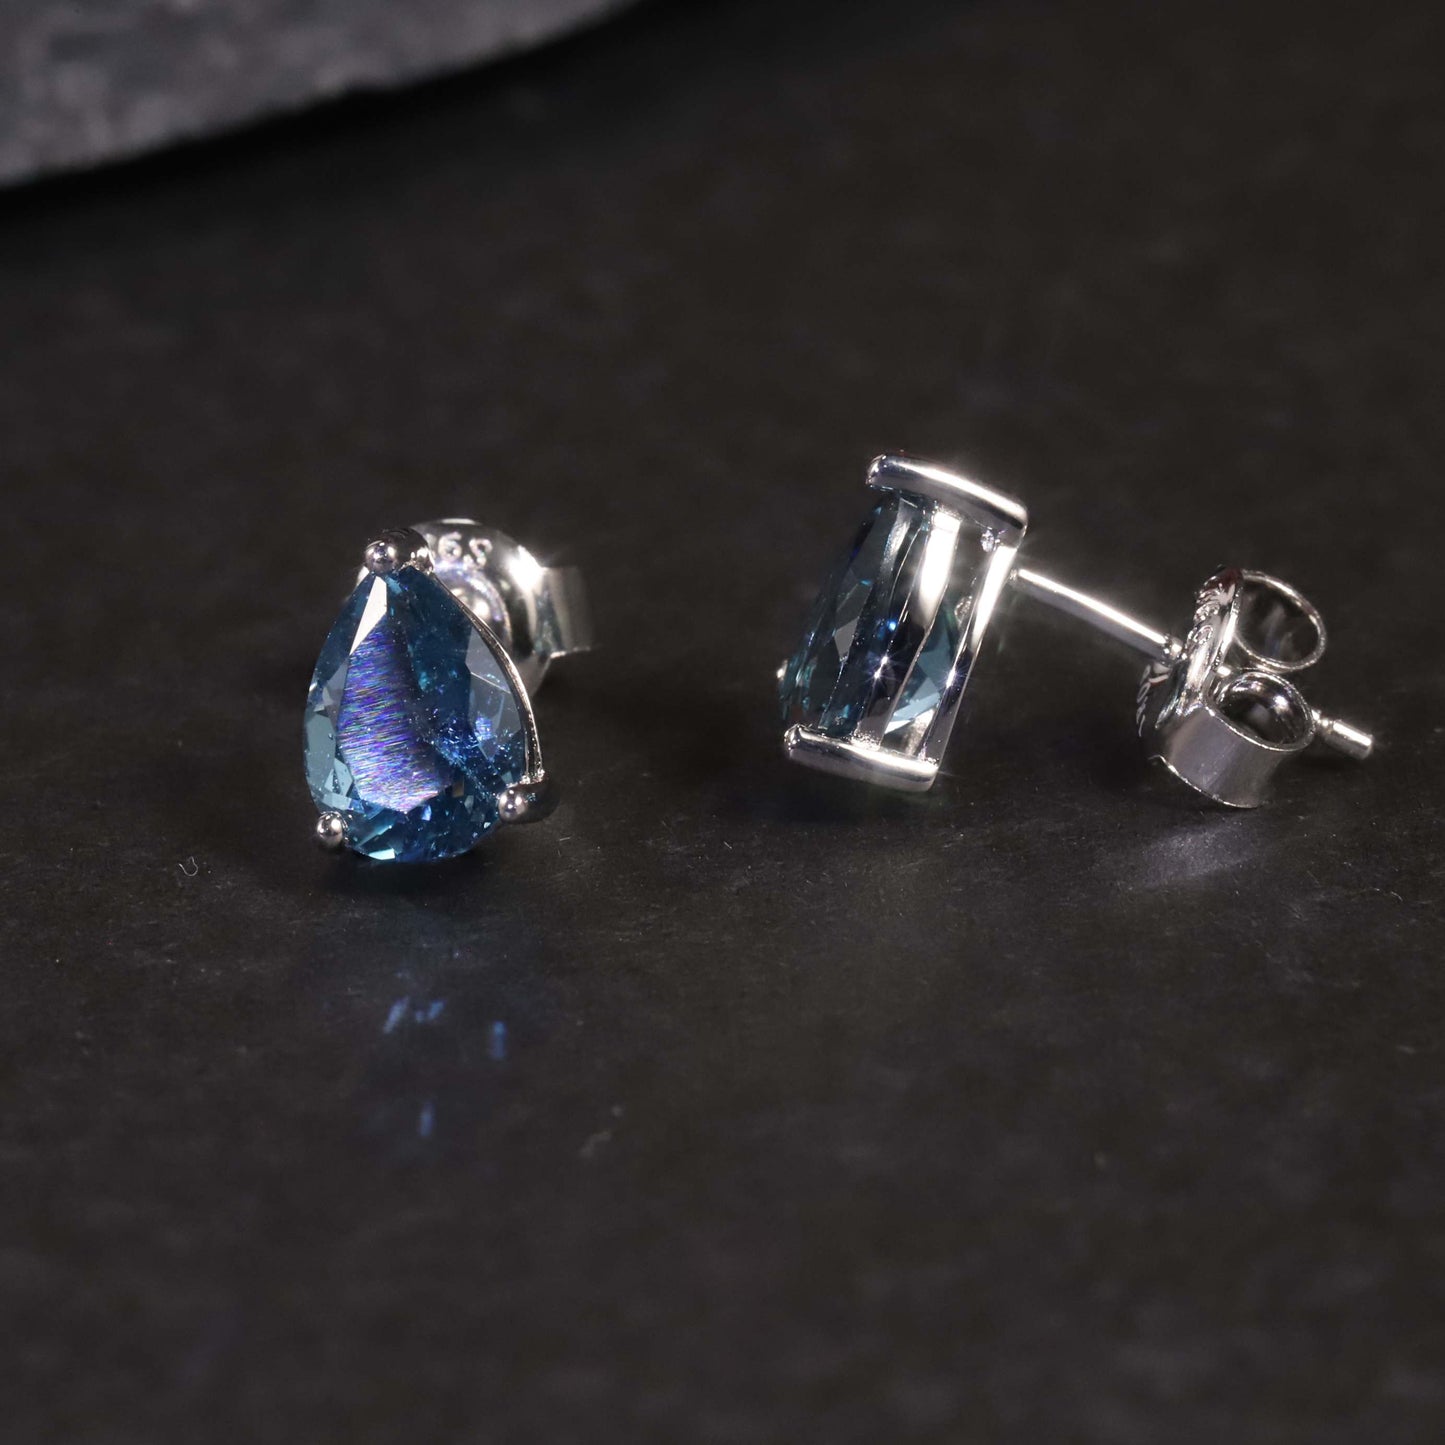 Pear Cut Stud Earrings in Sterling Silver -  London Blue Topaz